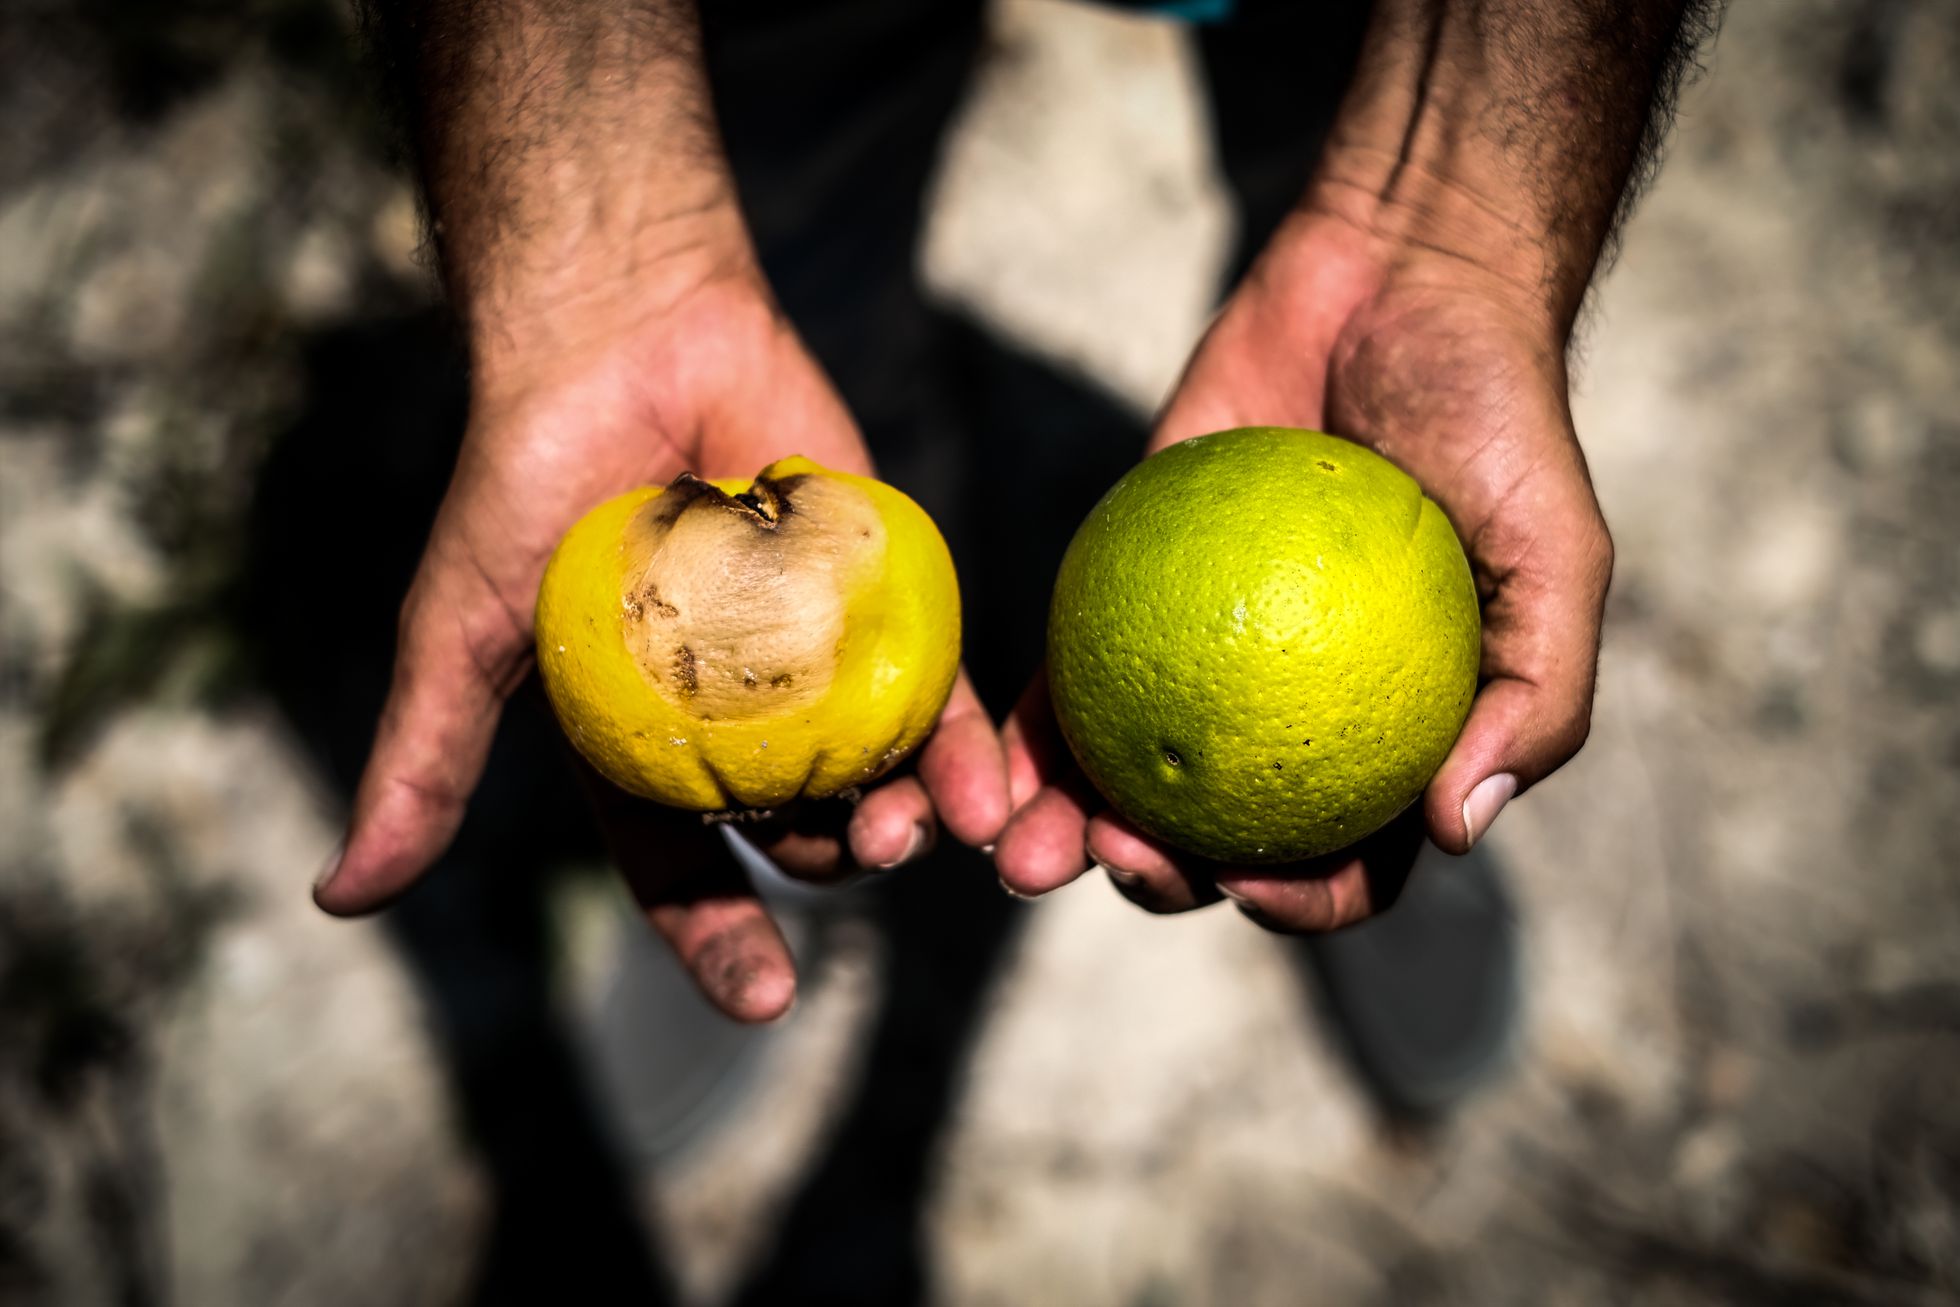 El agricultor José Vicente Andreu con el embalse de La Pedrera (Orihuela, Alicante) al fondo. Andreu trabaja 150 hectáreas y produce alrededor de 2.000 toneladas anuales de cultivo ecológico de limones, pomelos, mandarina, además de varias hectáreas de almendros y olivos.